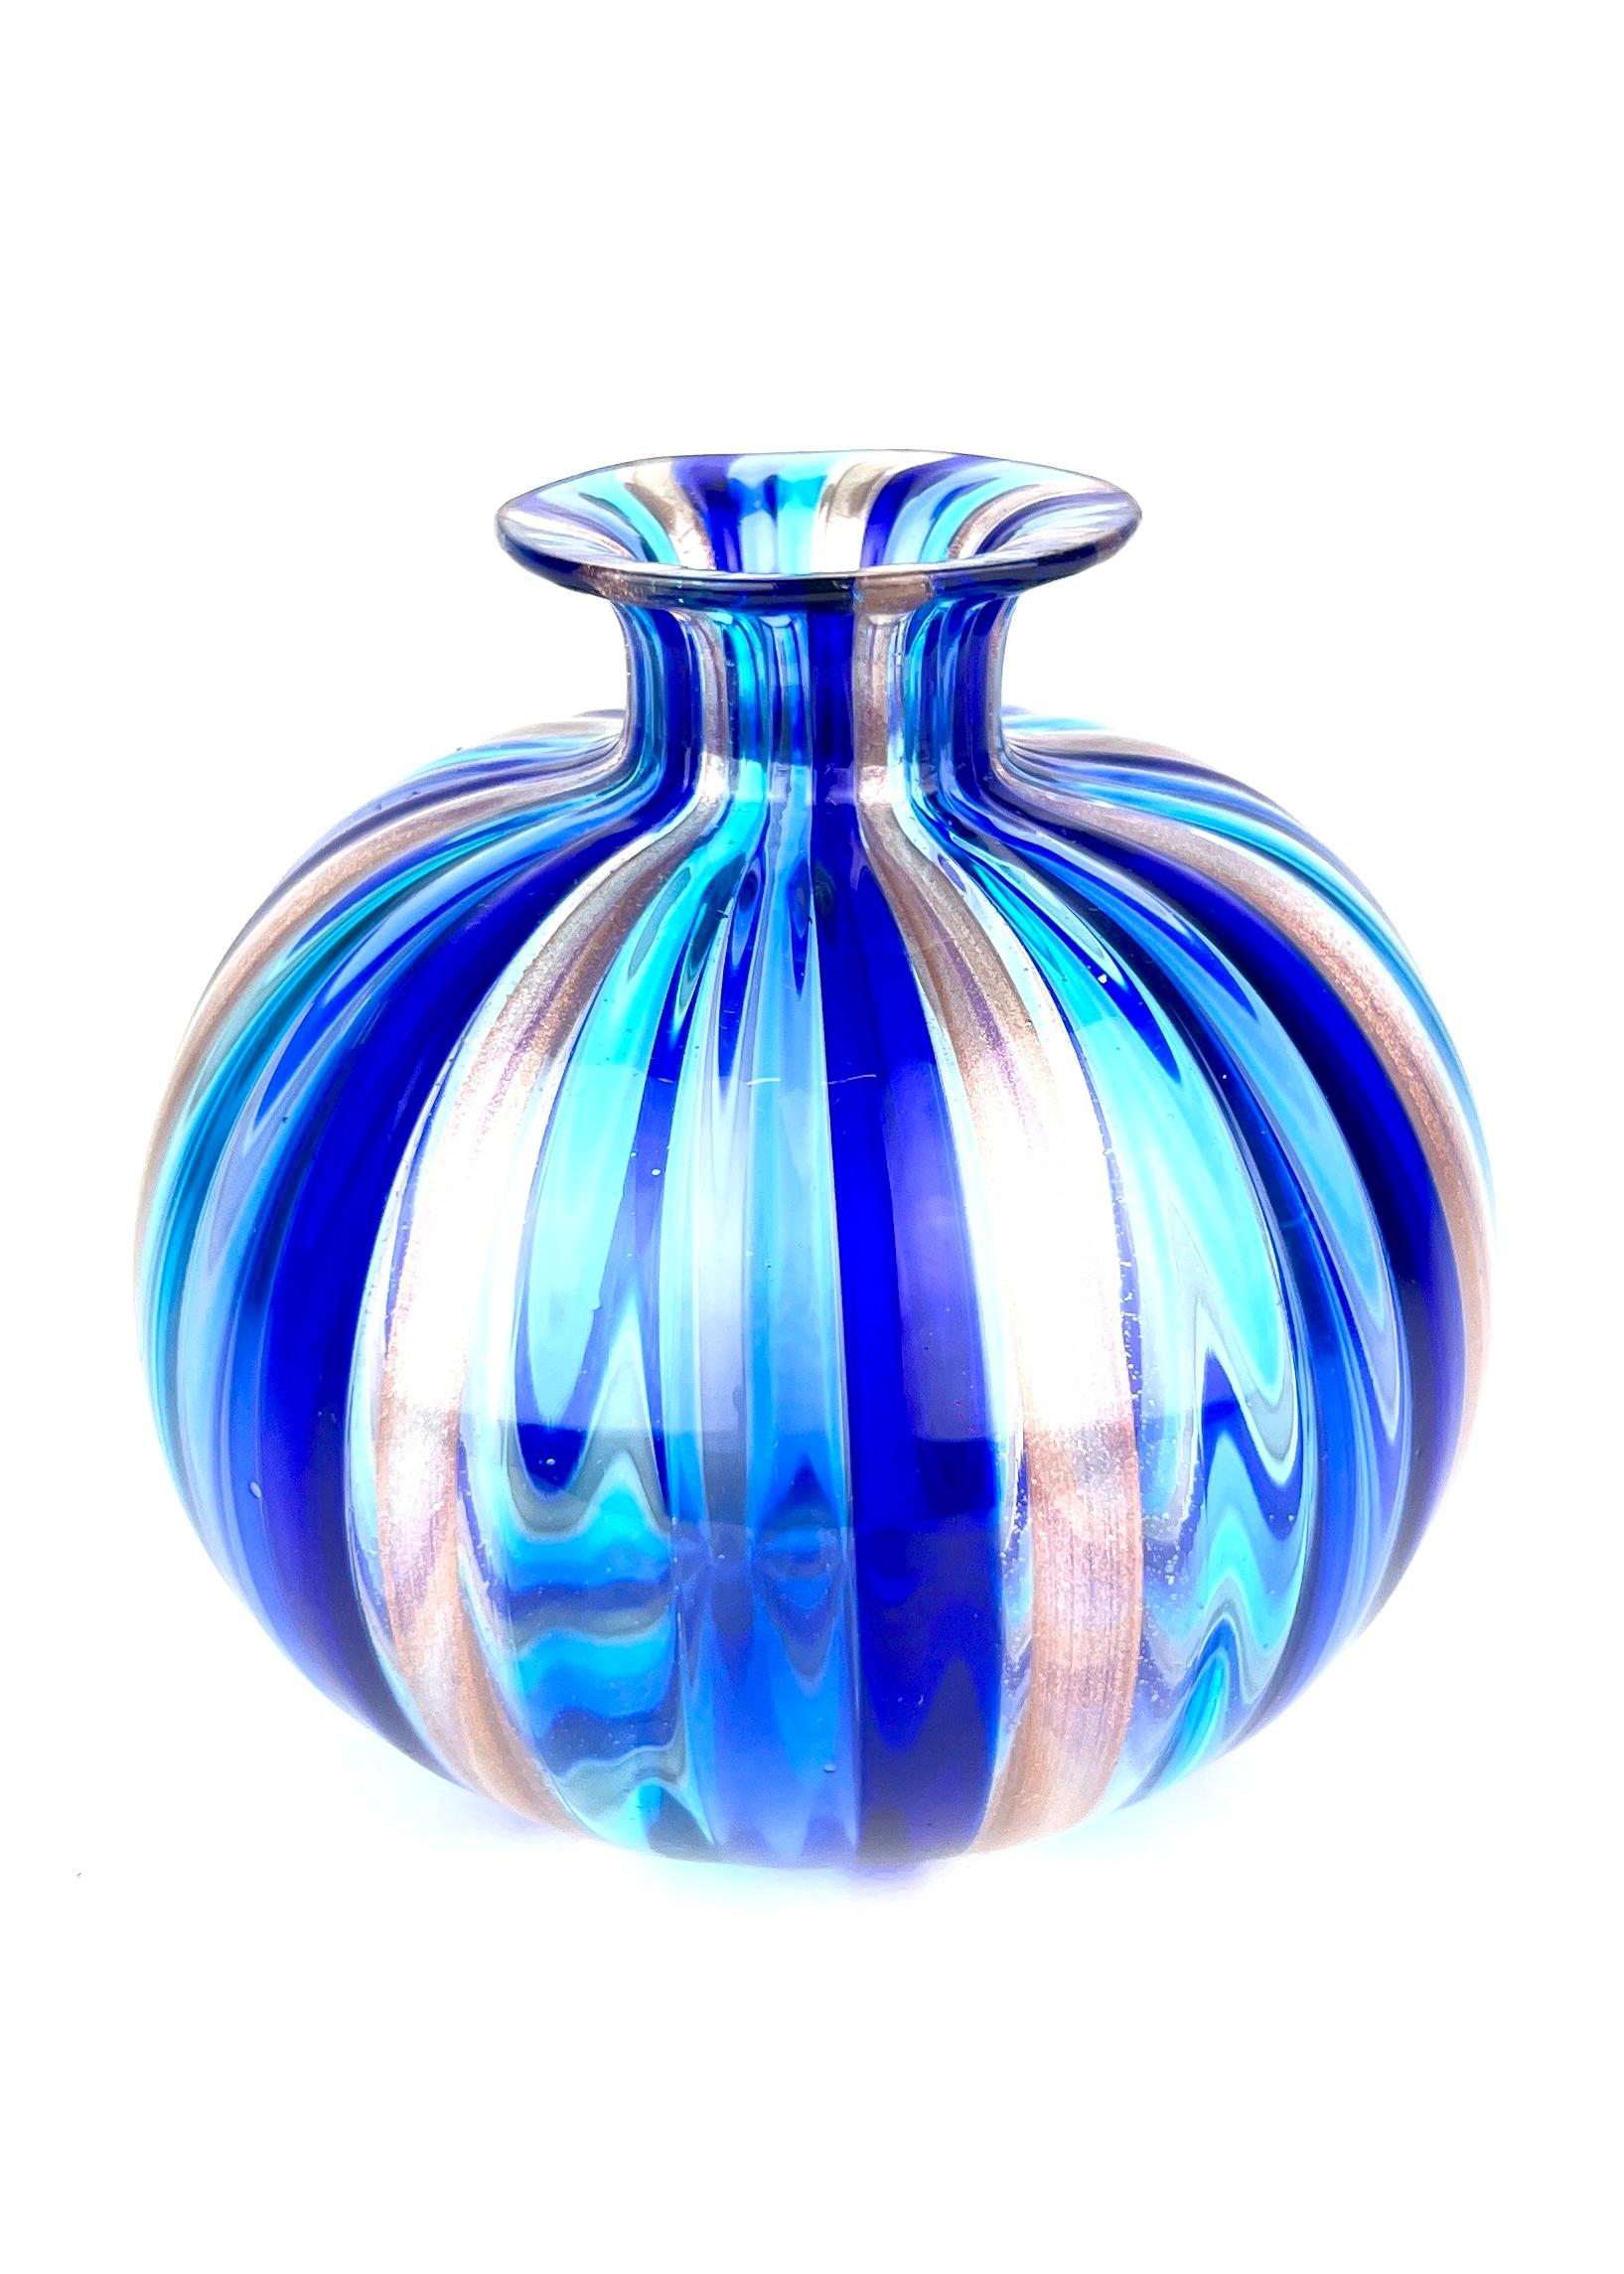 Collection S S - Vases en verre de Murano bleu
Les Murano sont des cylindres de verre de Murano colorés qui, fusionnés sur le vase, forment cette œuvre magnifique.
Drite se dit lorsque les kanne sont positionnés de manière à être verticaux.
Vases en